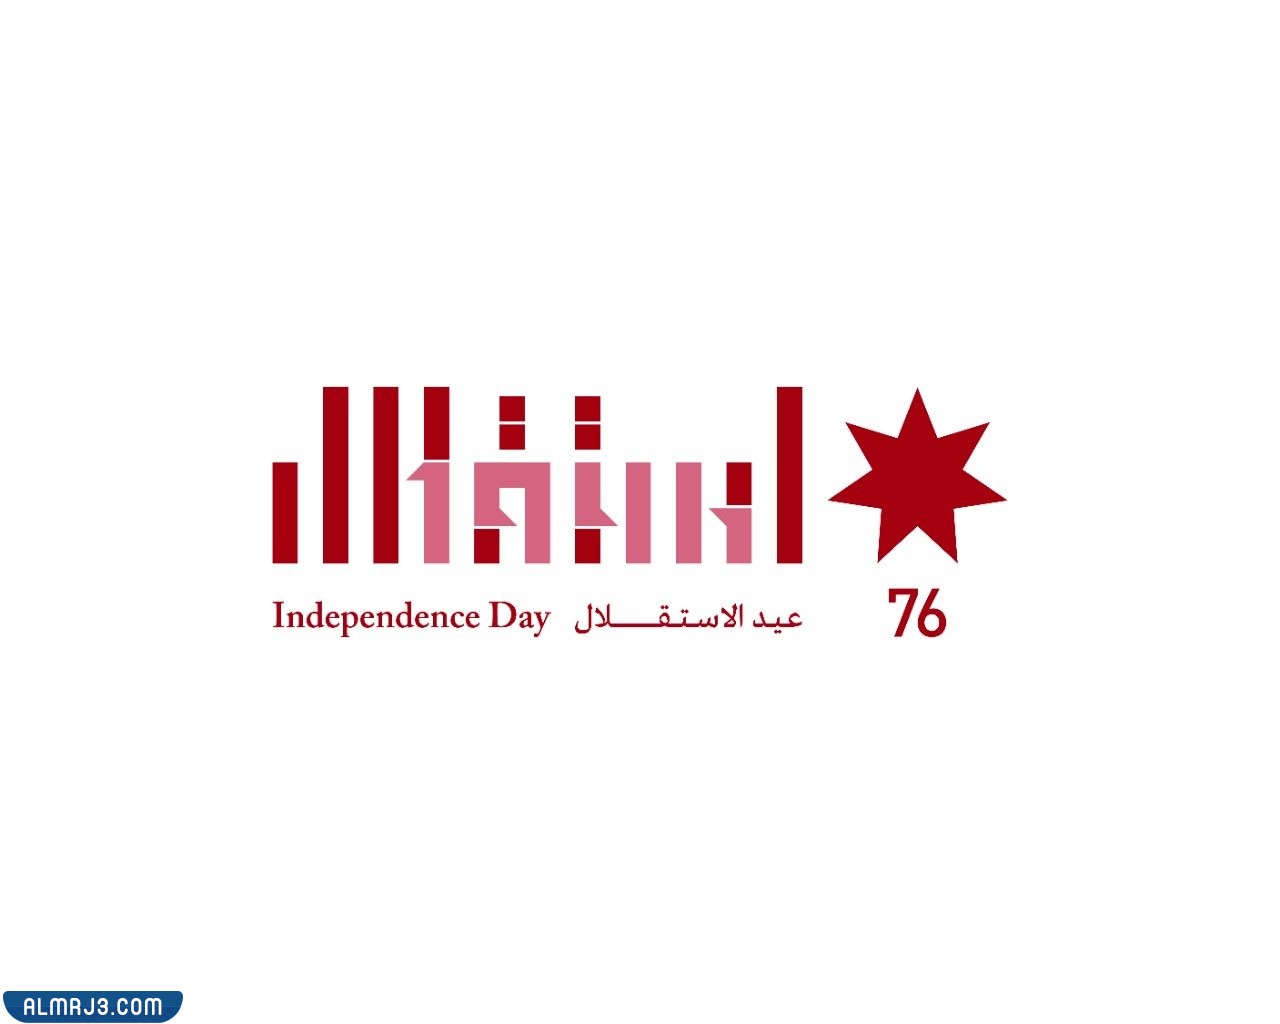 شعار عيد استقلال الاردن ال 76 